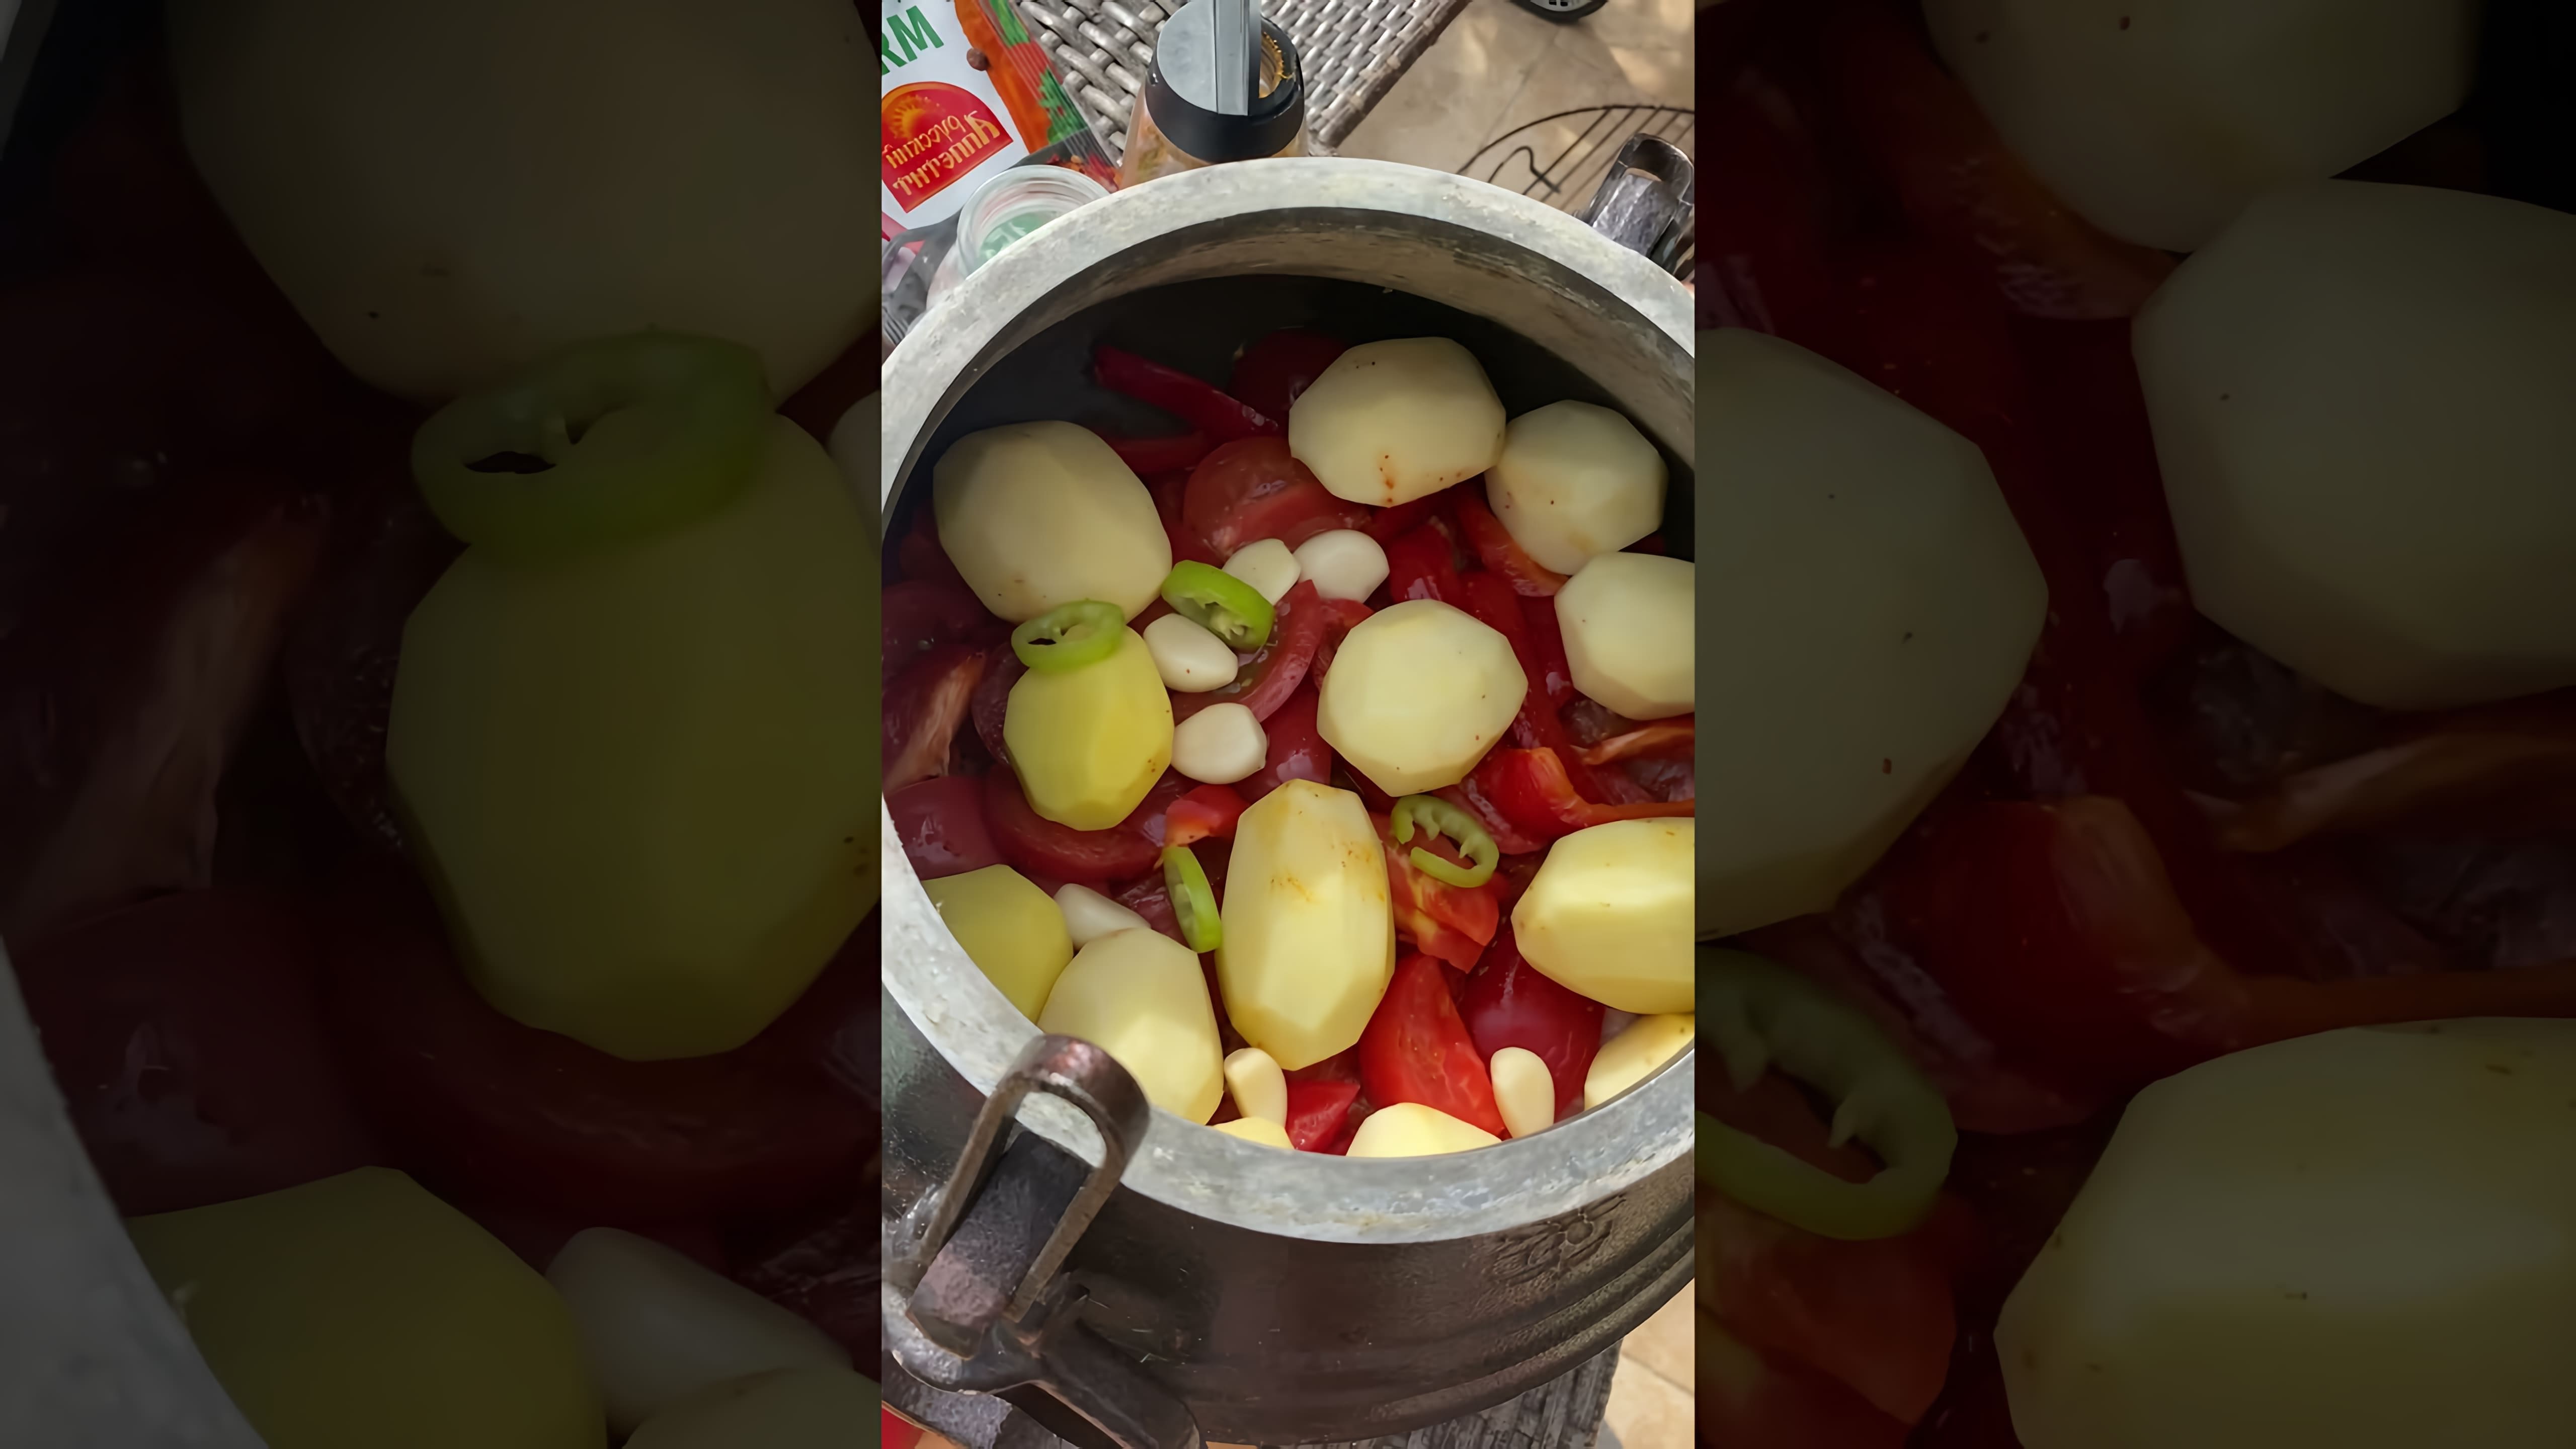 В этом видео демонстрируется процесс приготовления свинины с овощами в афганском казане